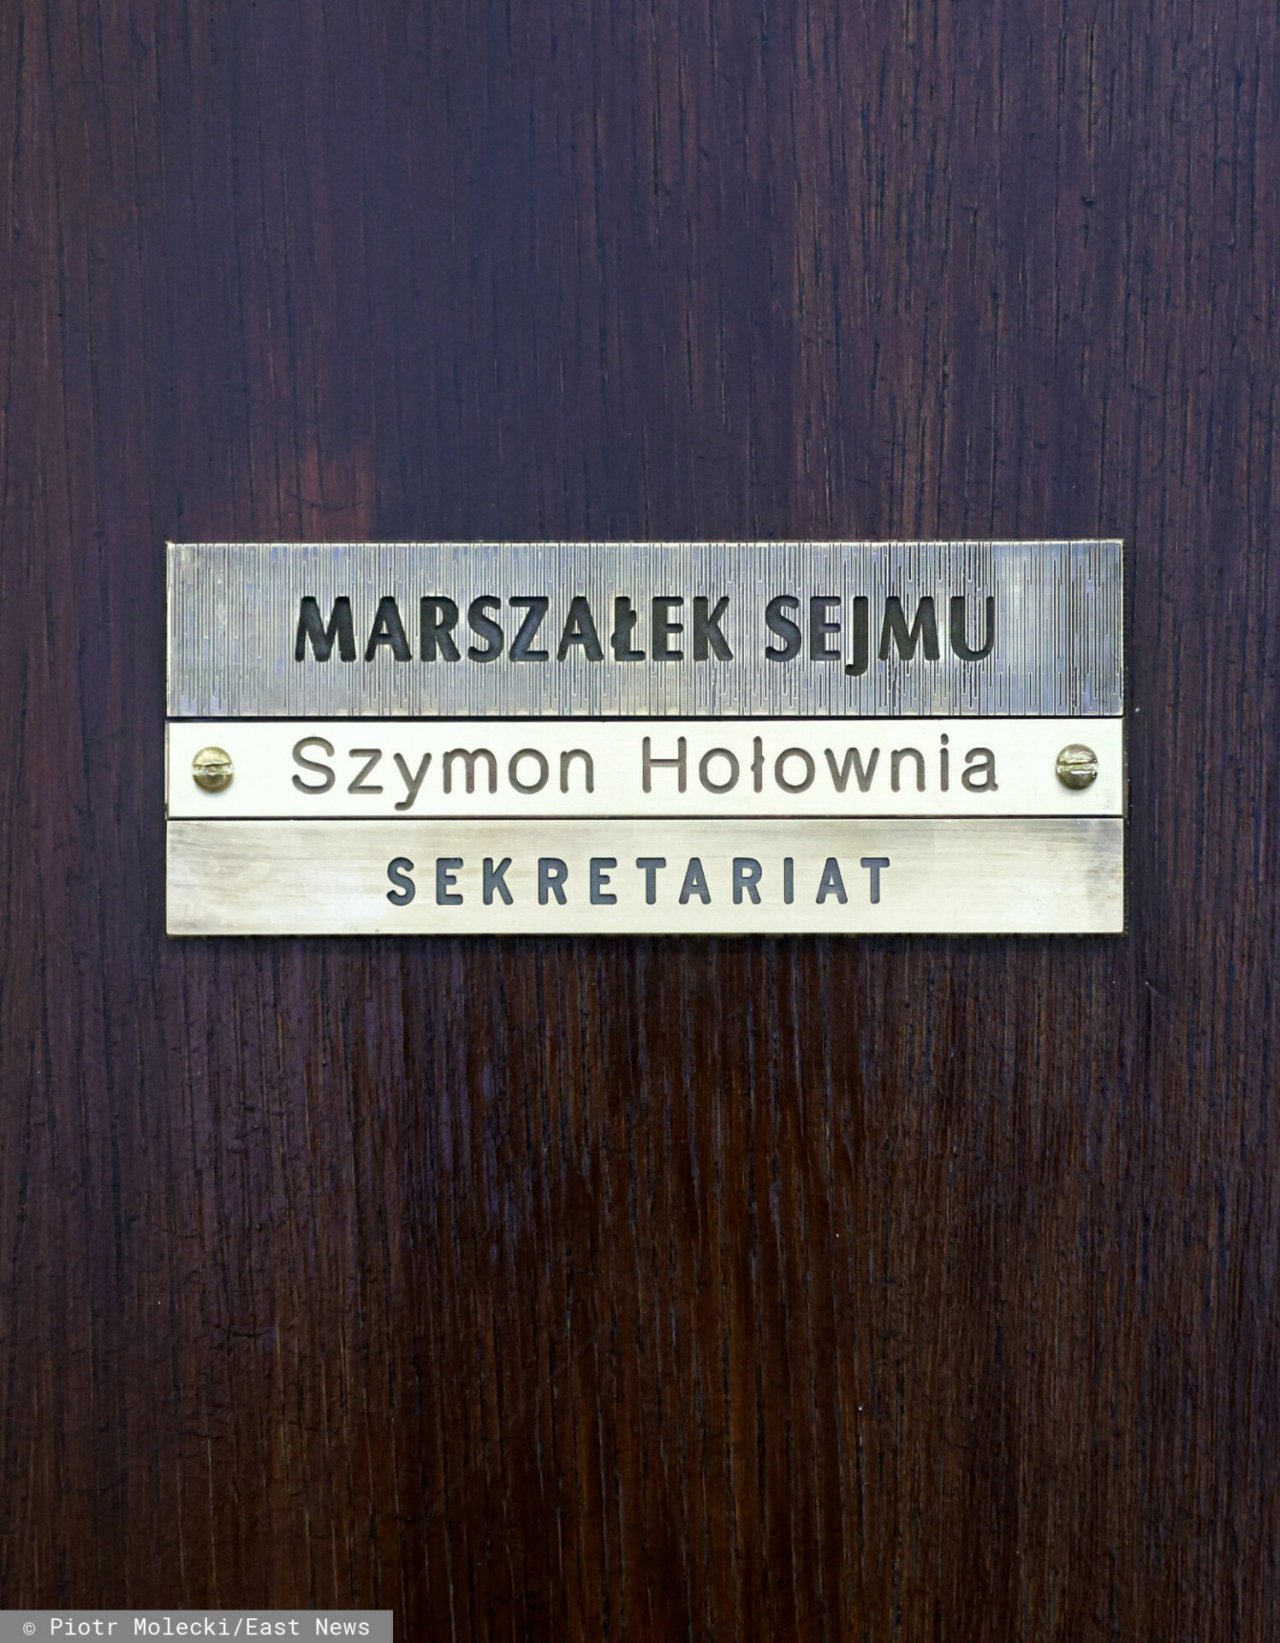 Szymon Hołownia, marszałek Sejmu, napis na drzwiach